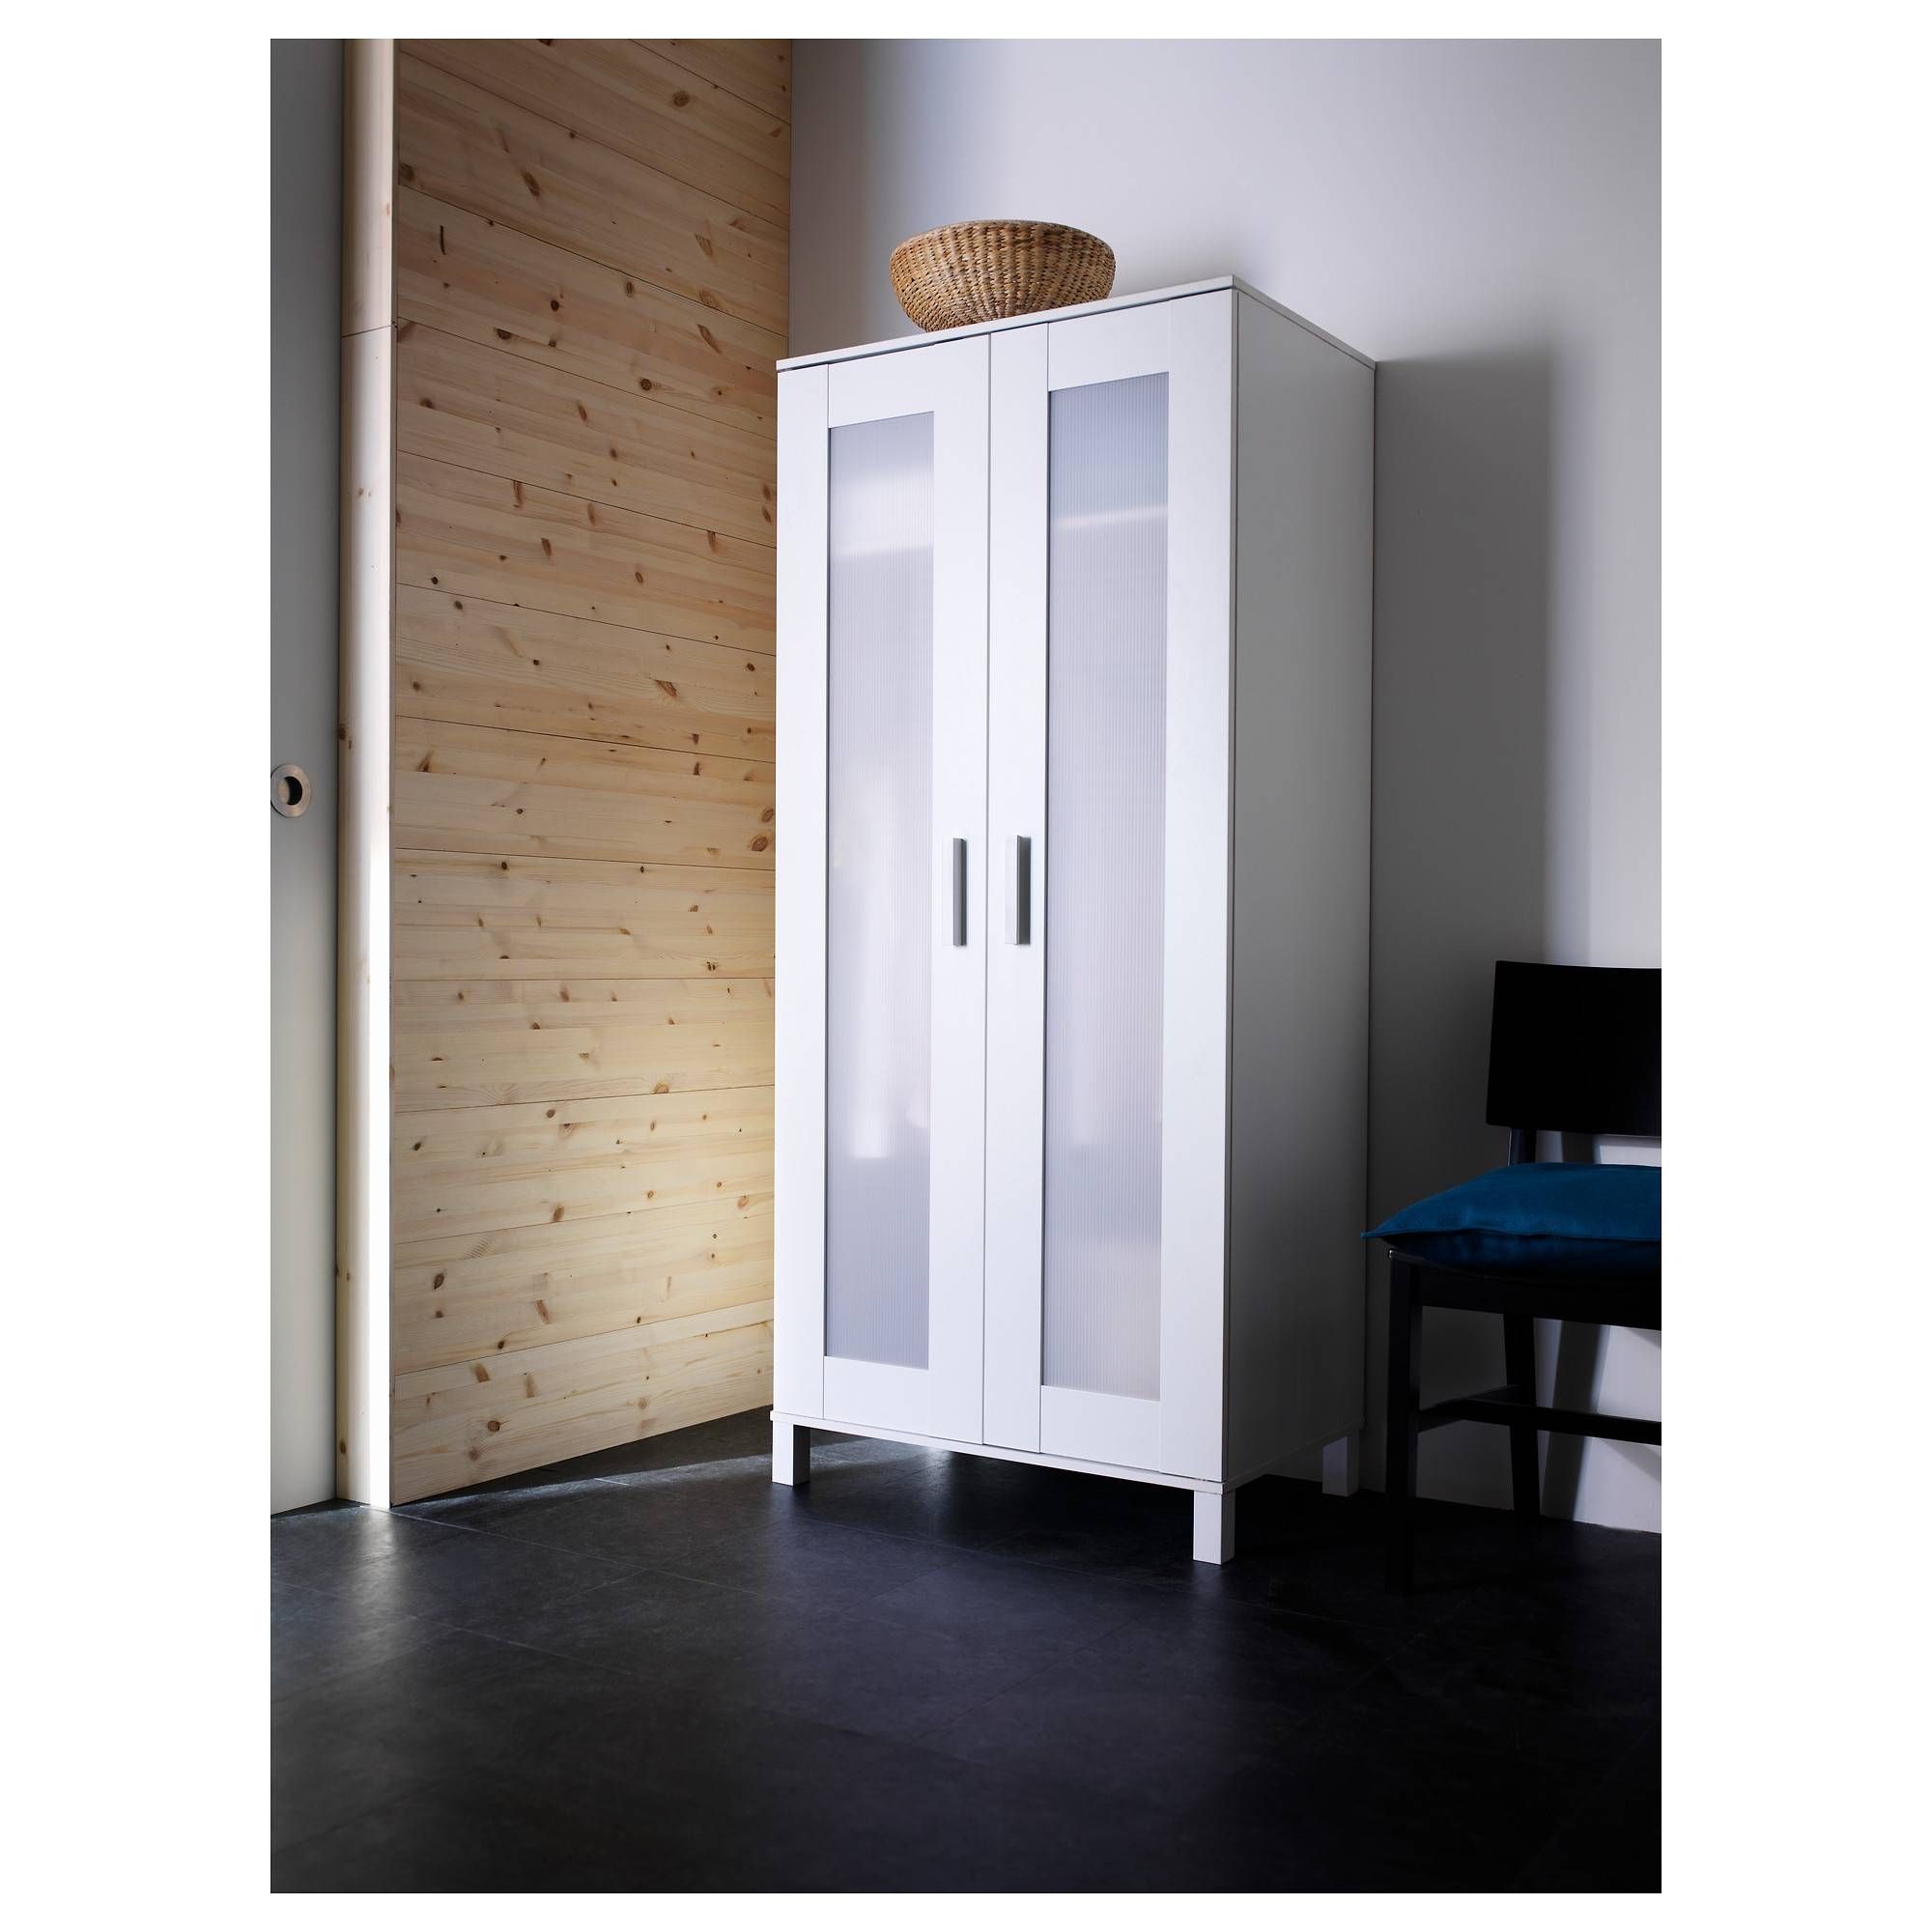 Aneboda Wardrobe White 81x180 Cm – Ikea For Single White Wardrobes (View 8 of 15)